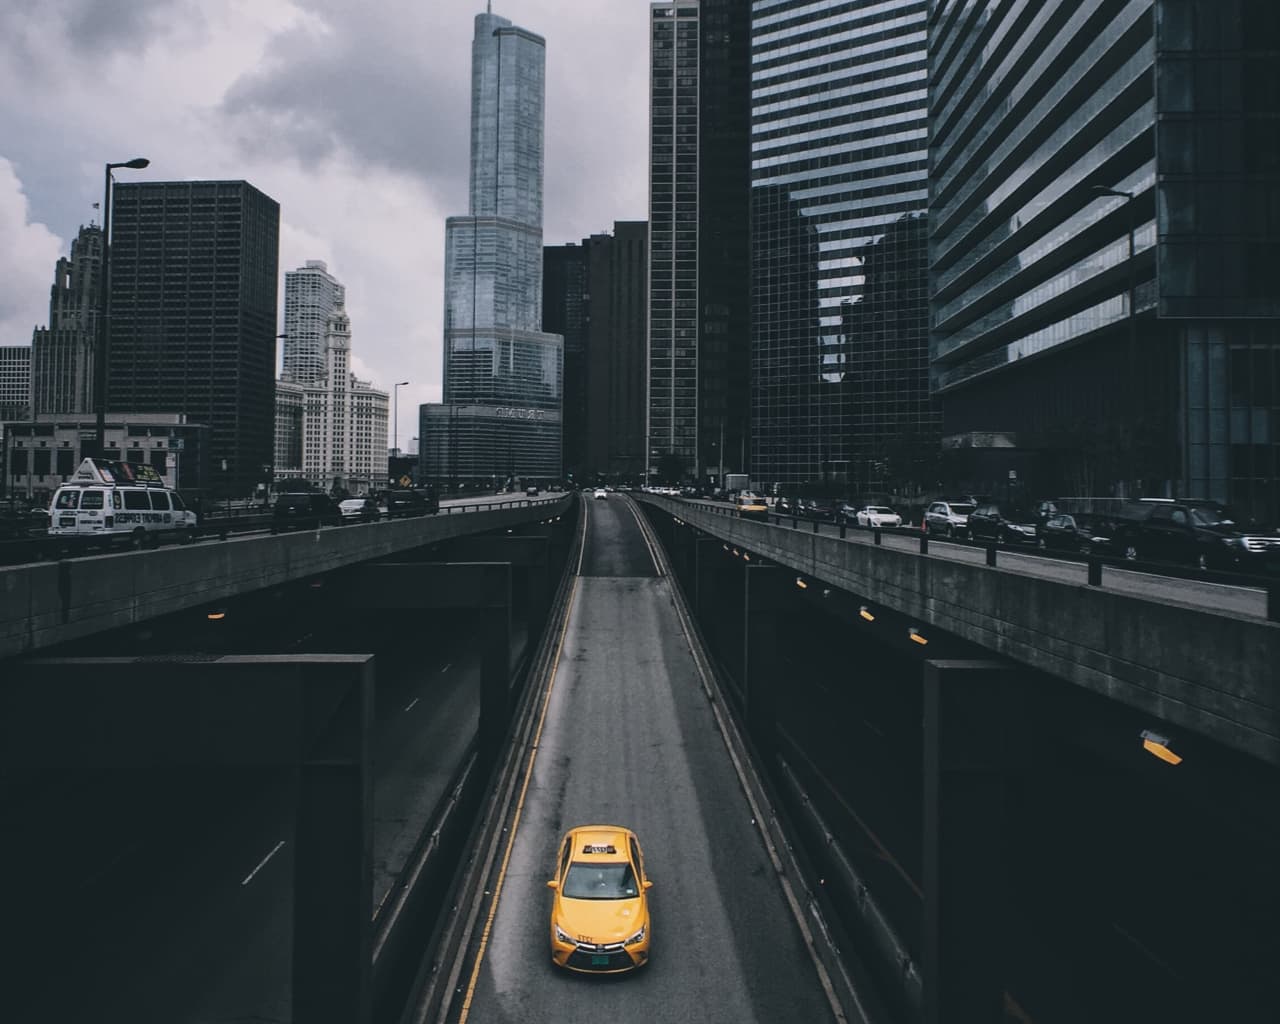 Vos applications et vos données doivent pouvoir se déplacer de manière transparente d'un environnement à un autre. Une approche d'intégration hybride - comme ce taxi - peut connecter des environnements très différents.